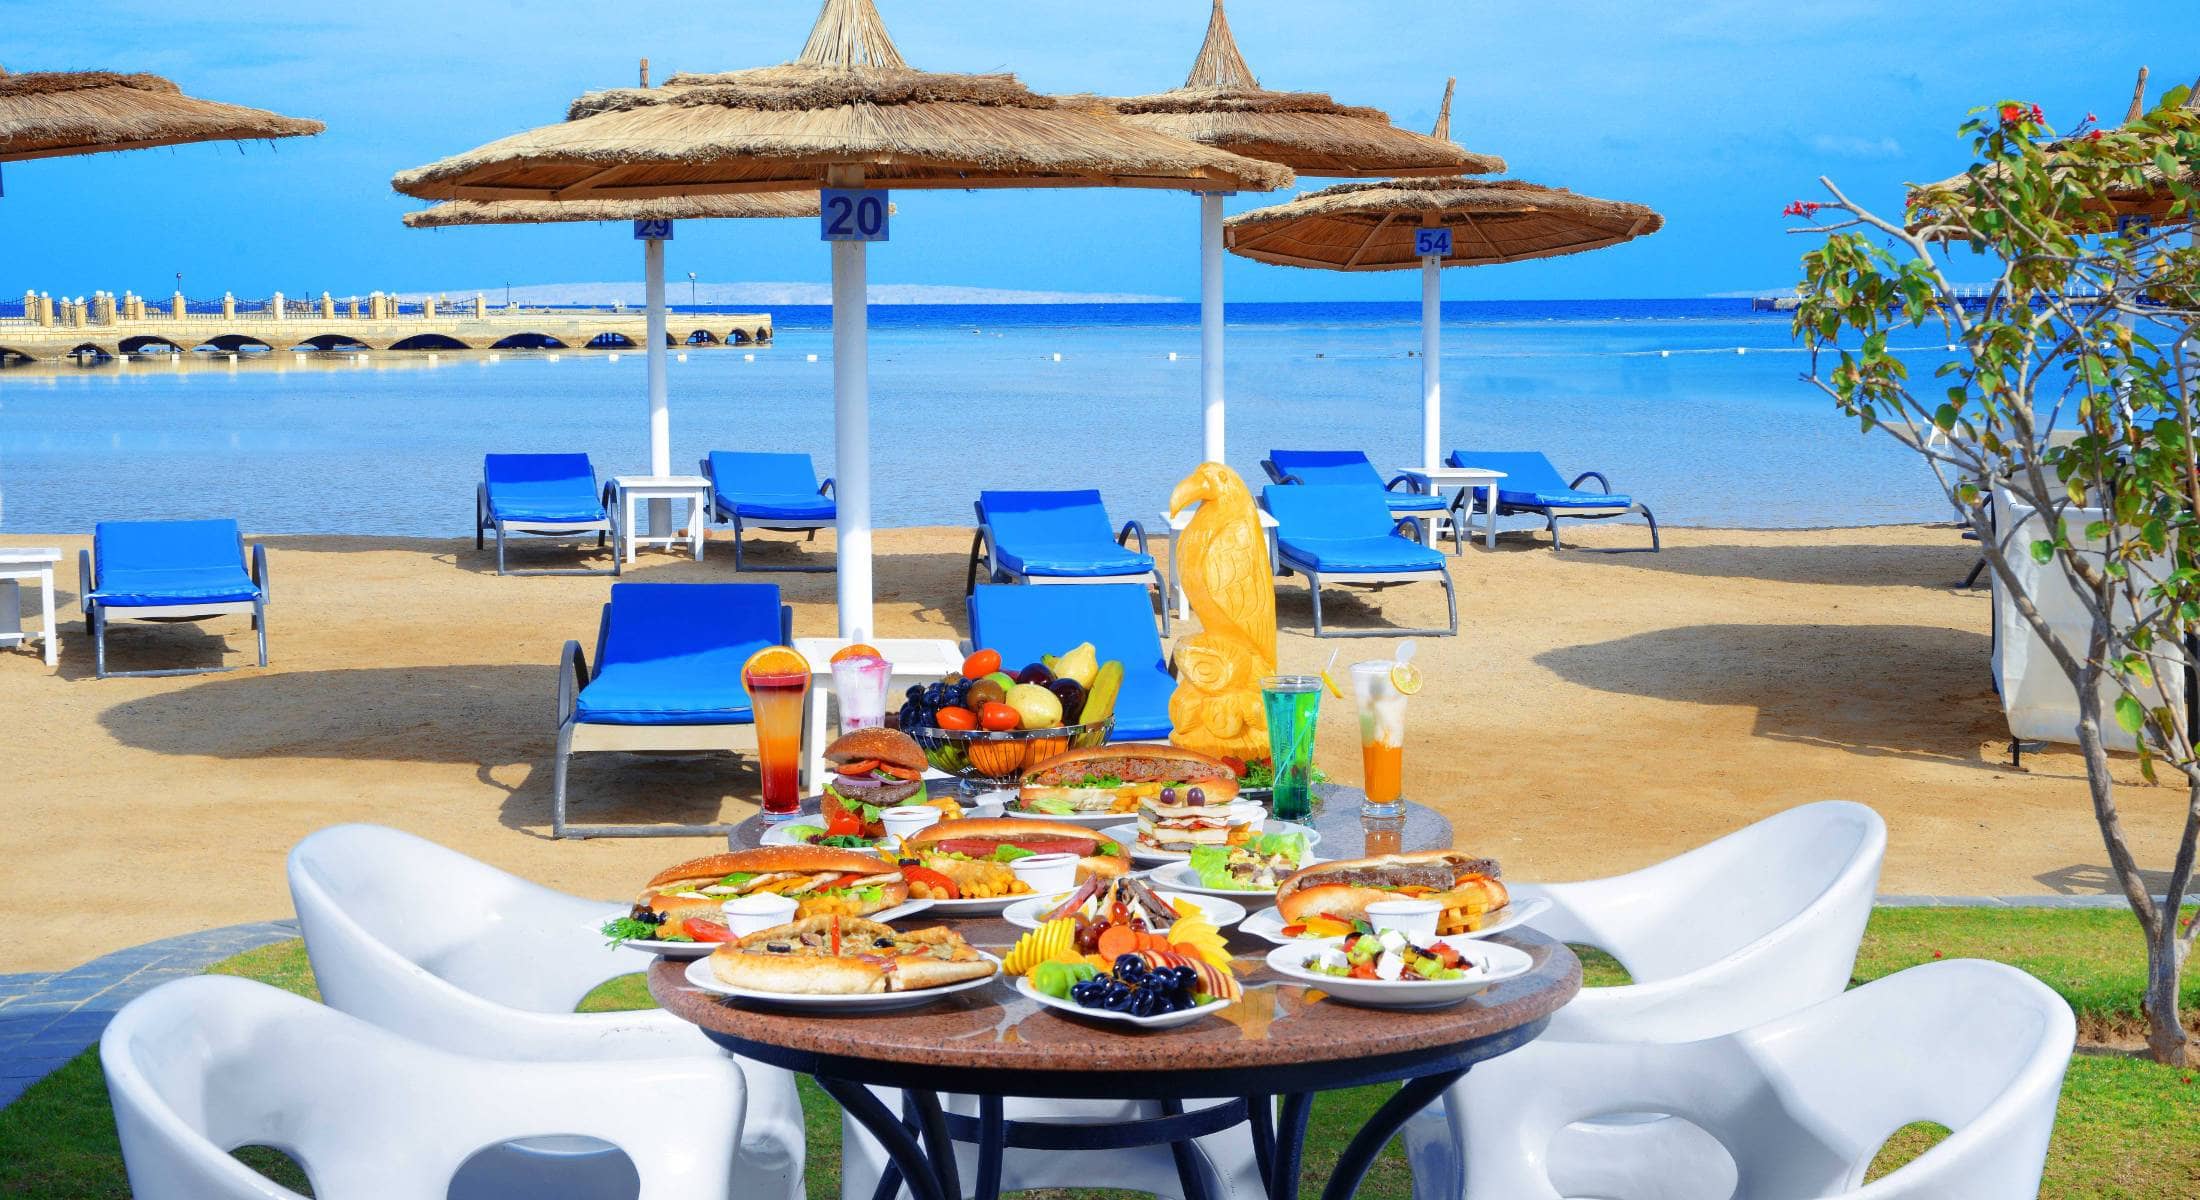 Egypt Hurghada - Dana Beach Resort